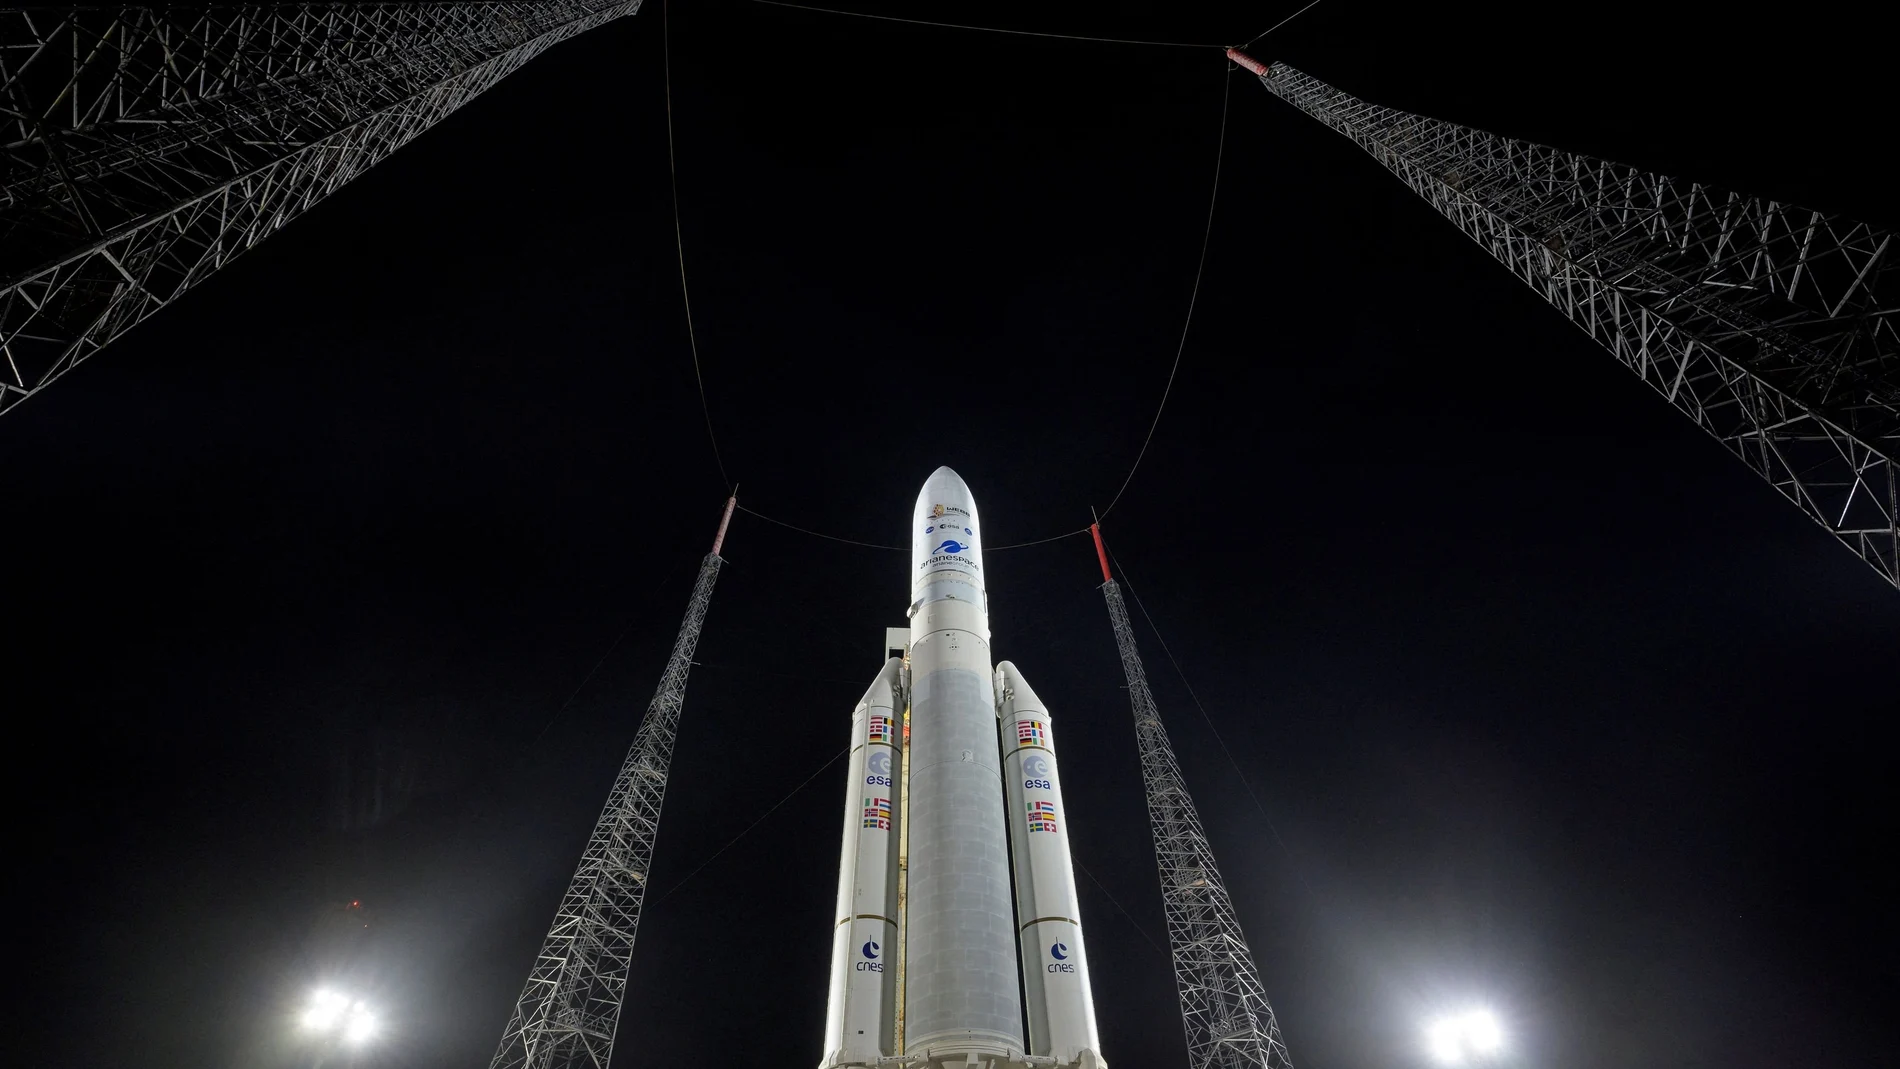 El cohete Ariane 5 de Arianespace, con el telescopio espacial James Webb en su interior, espera en la plataforma de lanzamiento del puerto espacial Kourou. Fuente: NASA/Bill Ingalls/REUTERS